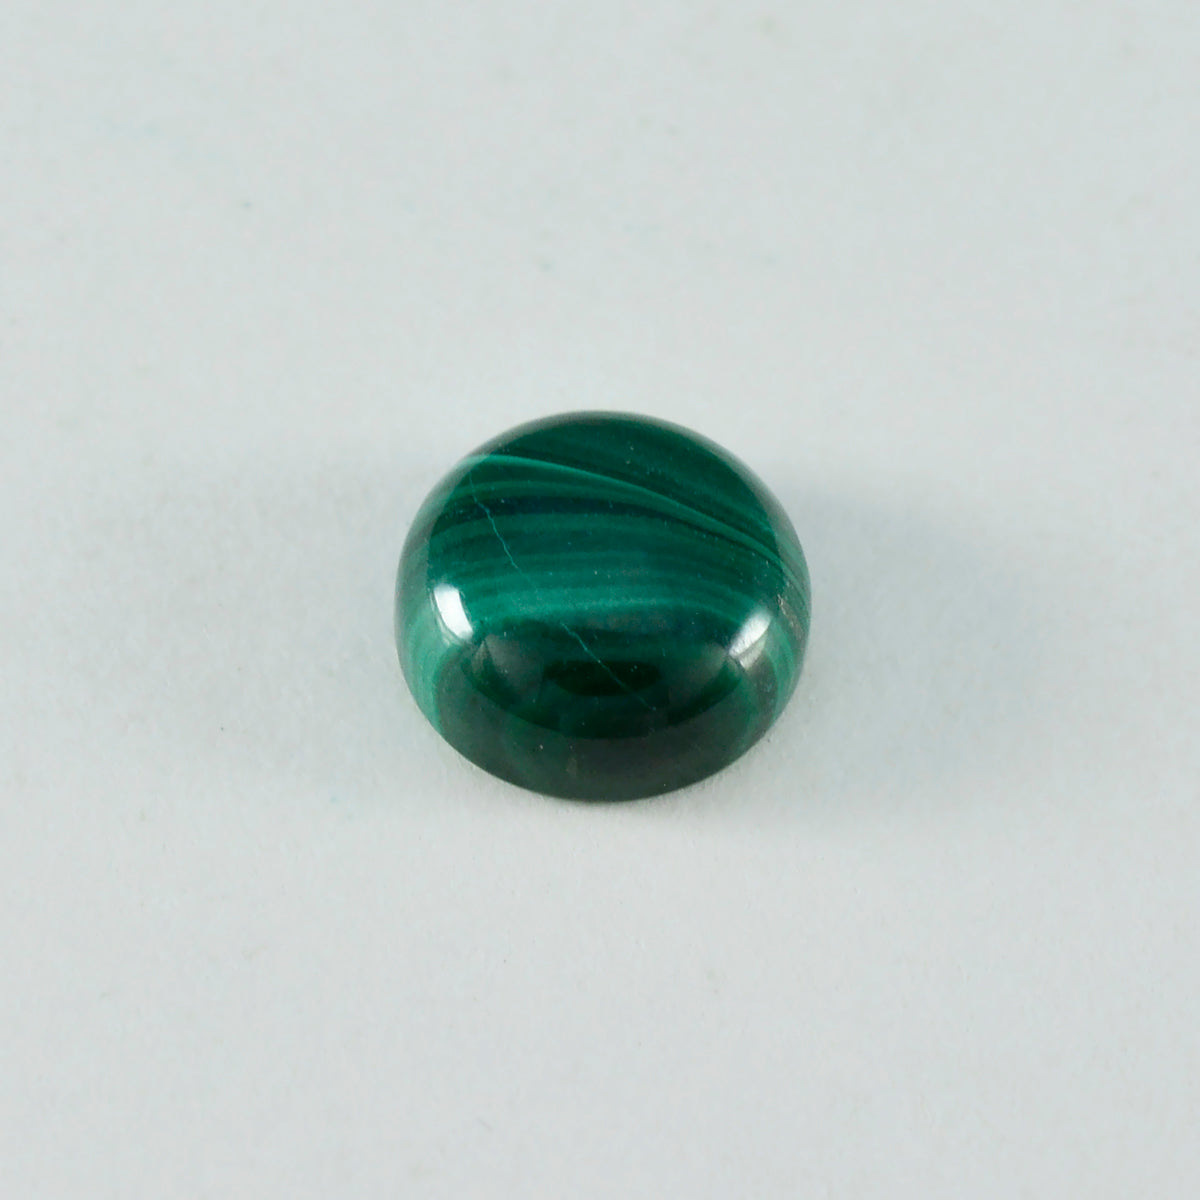 riyogems 1 pieza cabujón de malaquita verde 13x13 mm forma redonda piedra preciosa de calidad sorprendente